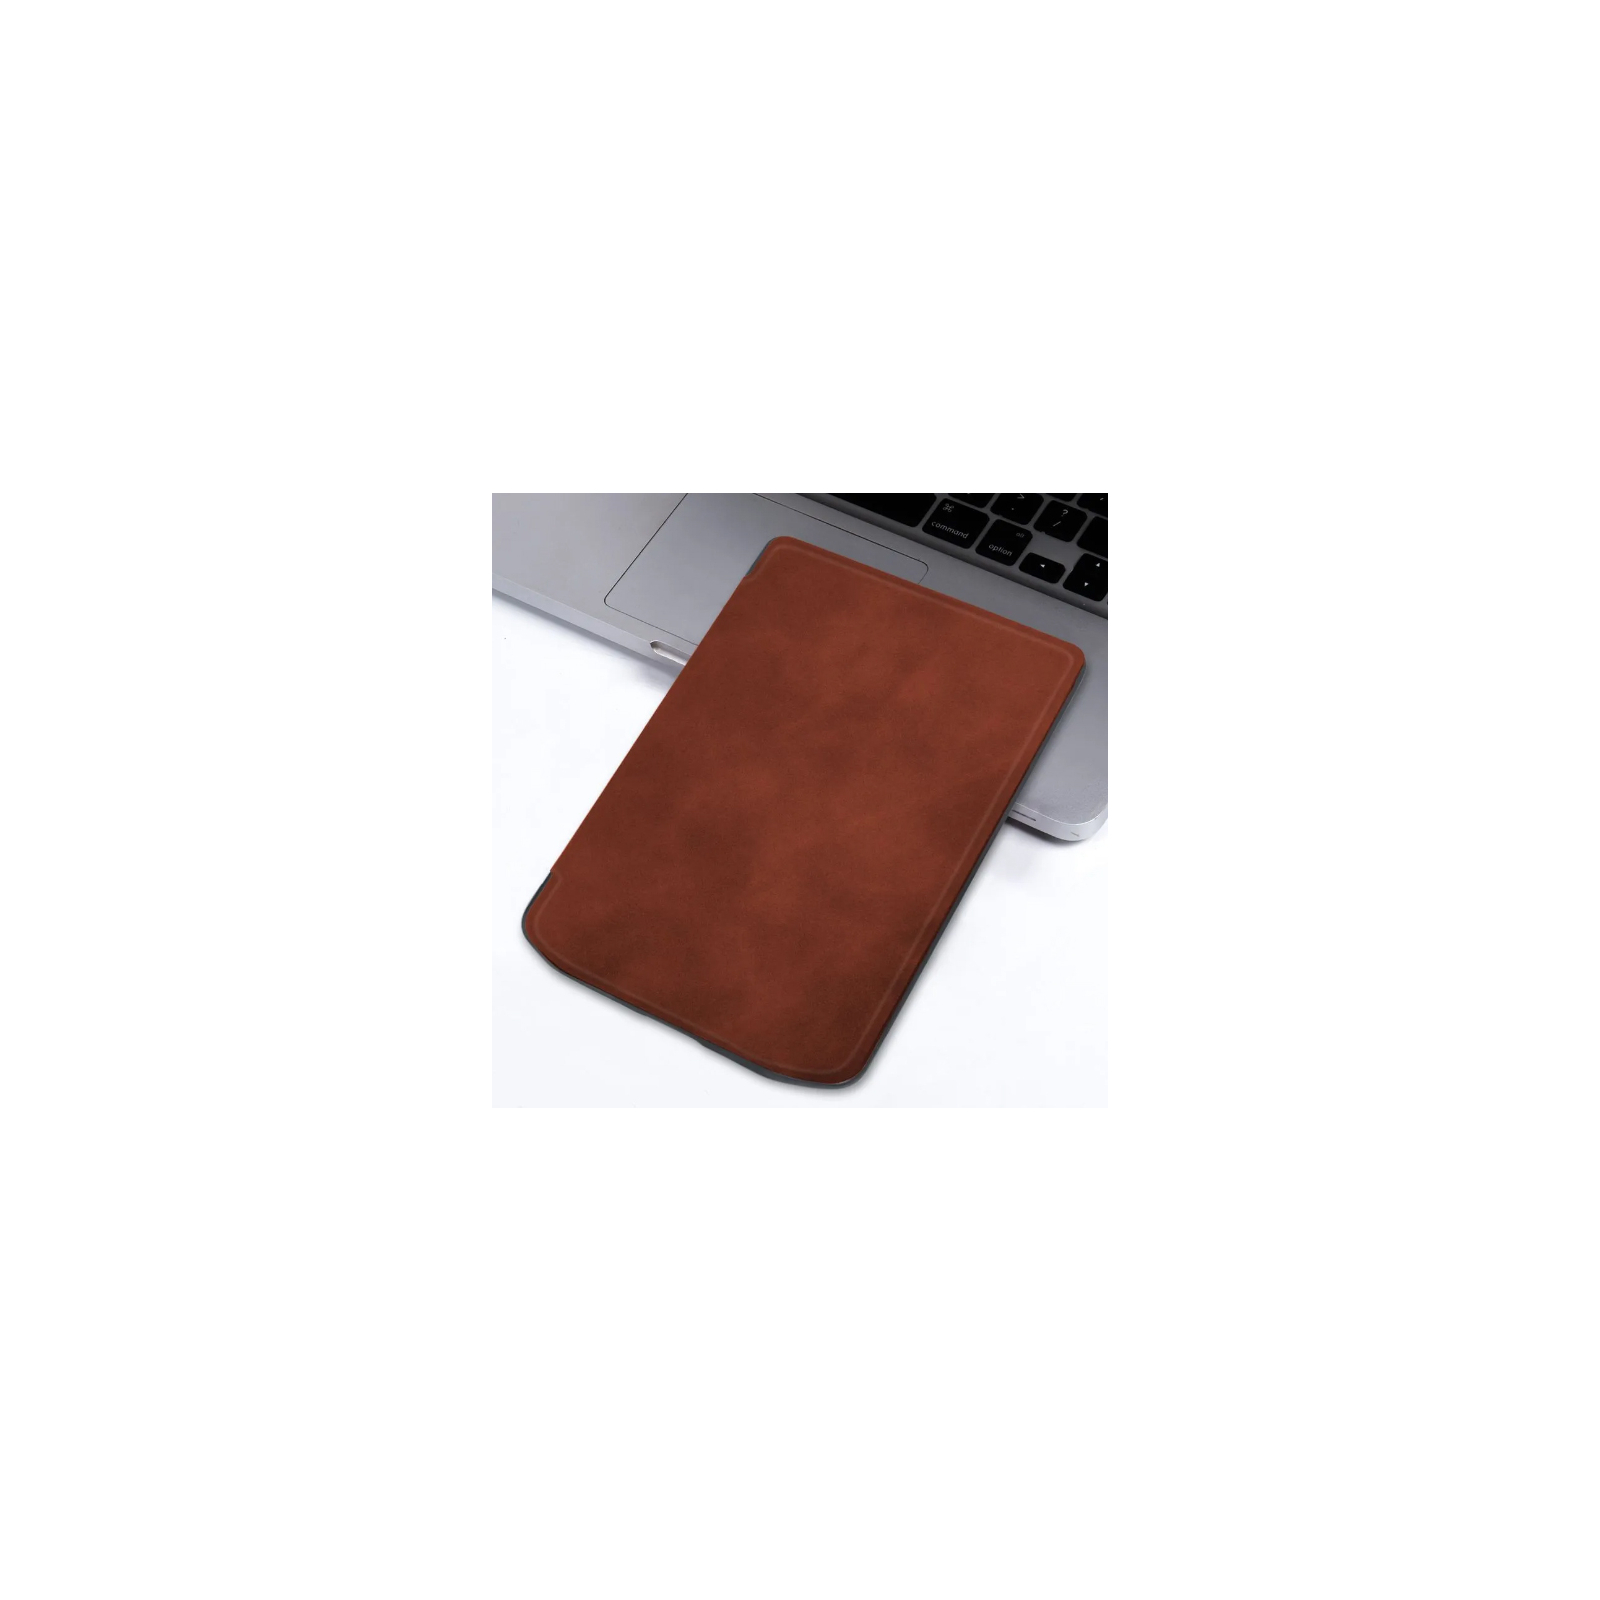 Чехол для электронной книги BeCover Smart Case PocketBook 629 Verse / 634 Verse Pro 6" Black (710450) изображение 7